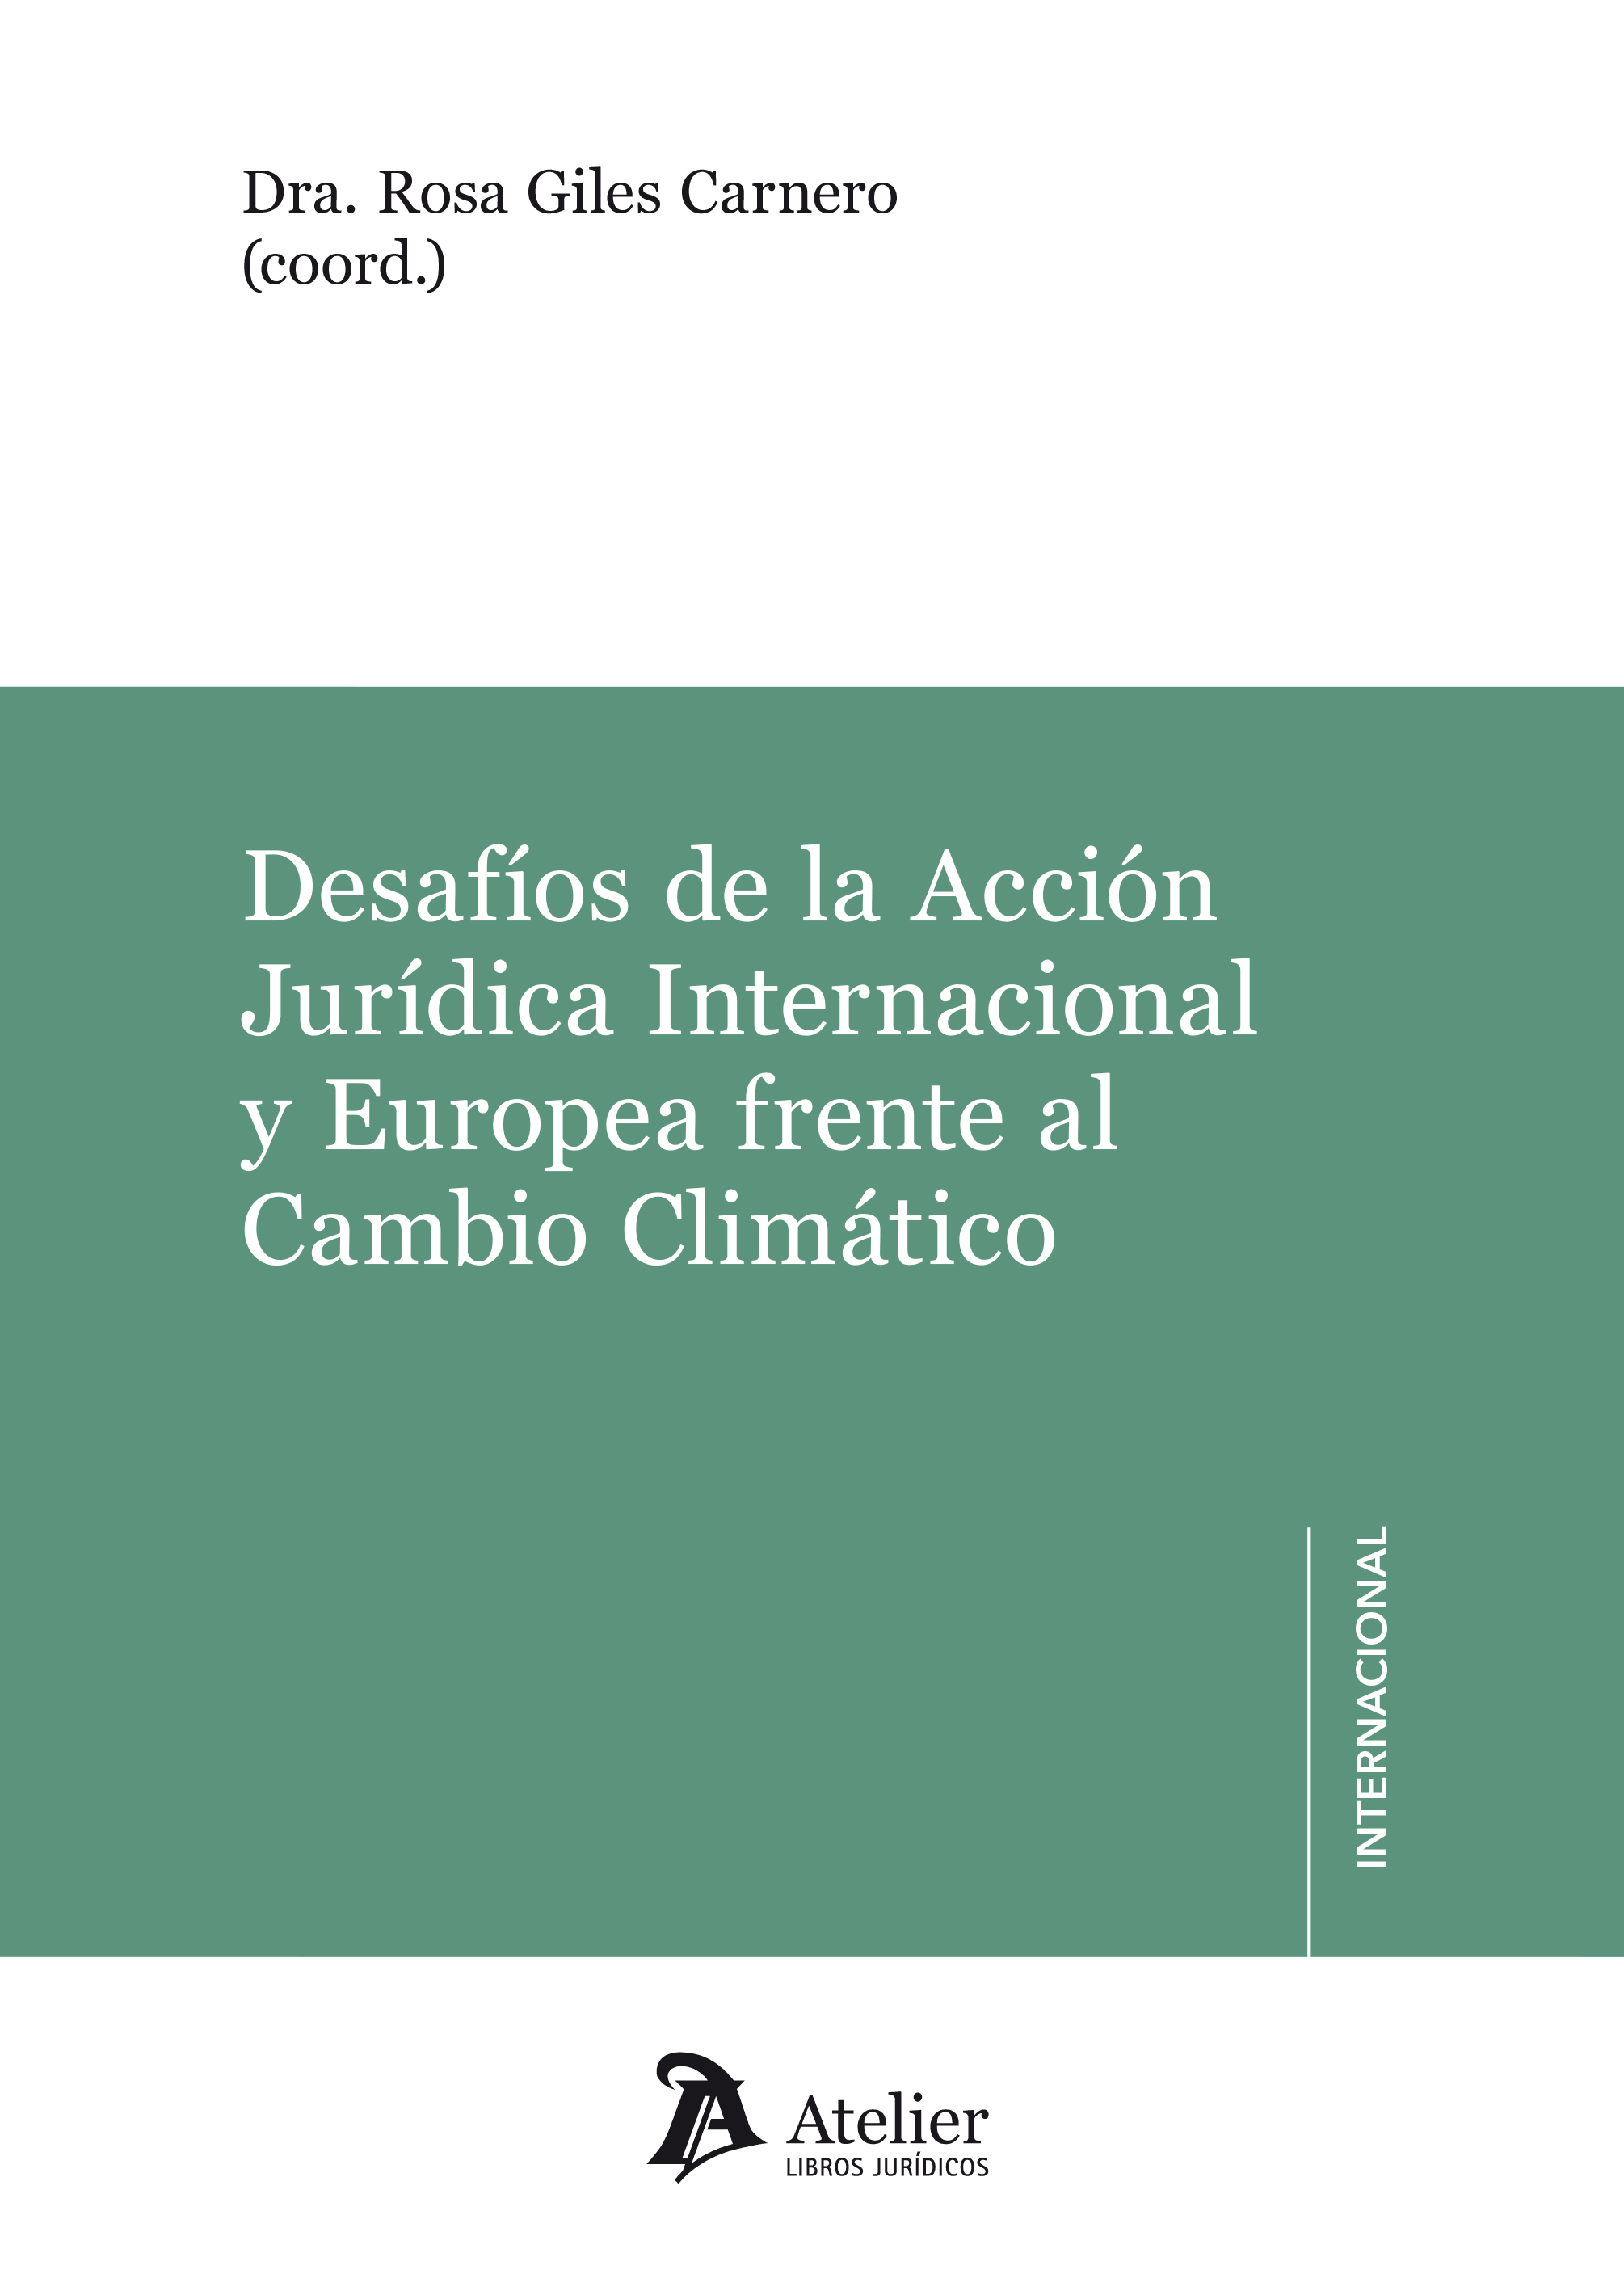 Imagen de portada del libro Desafíos de la Acción Jurídica Internacional y Europea frente al cambio climático